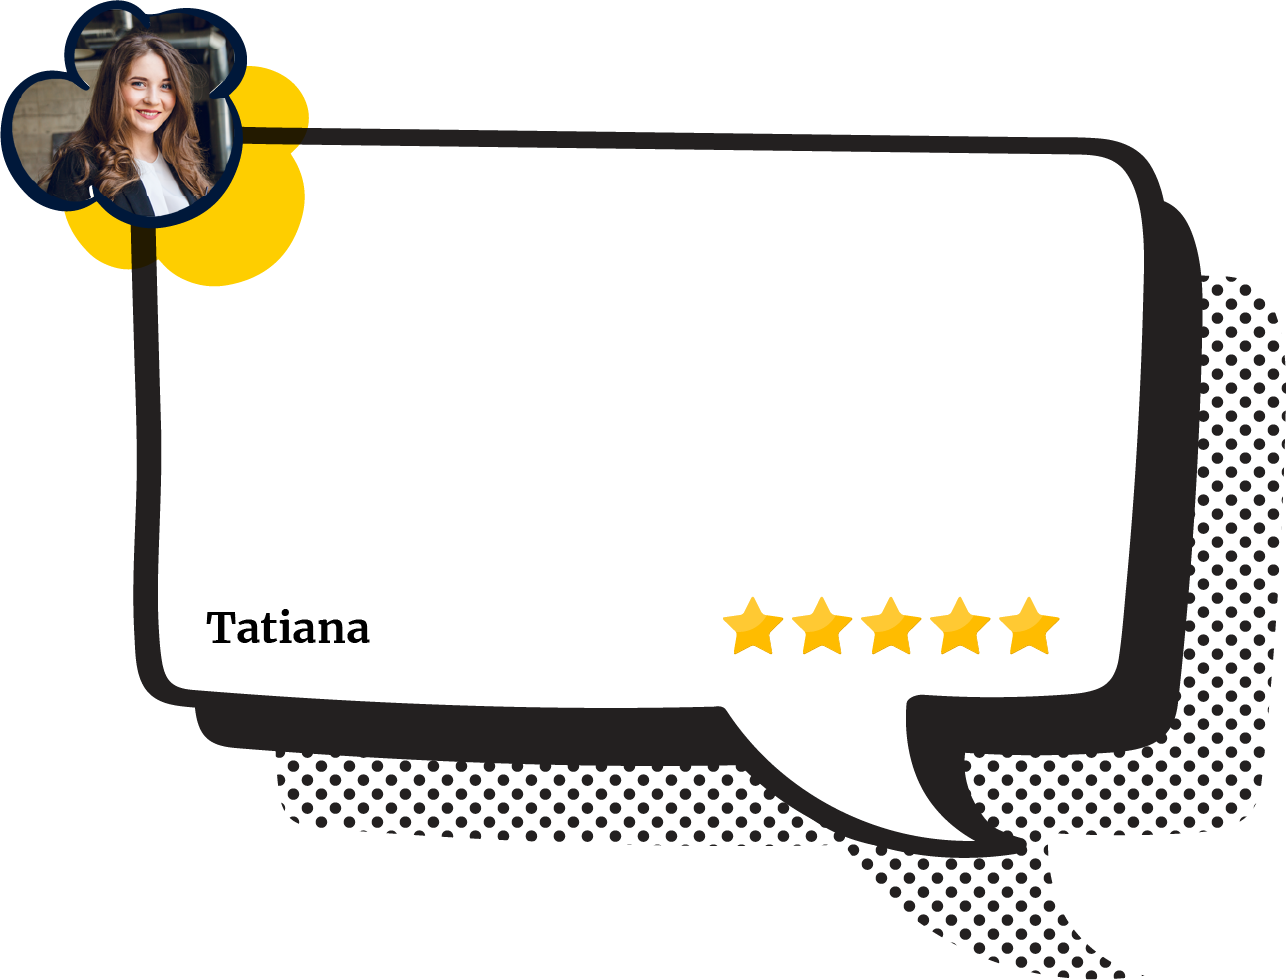 Tatiana Review